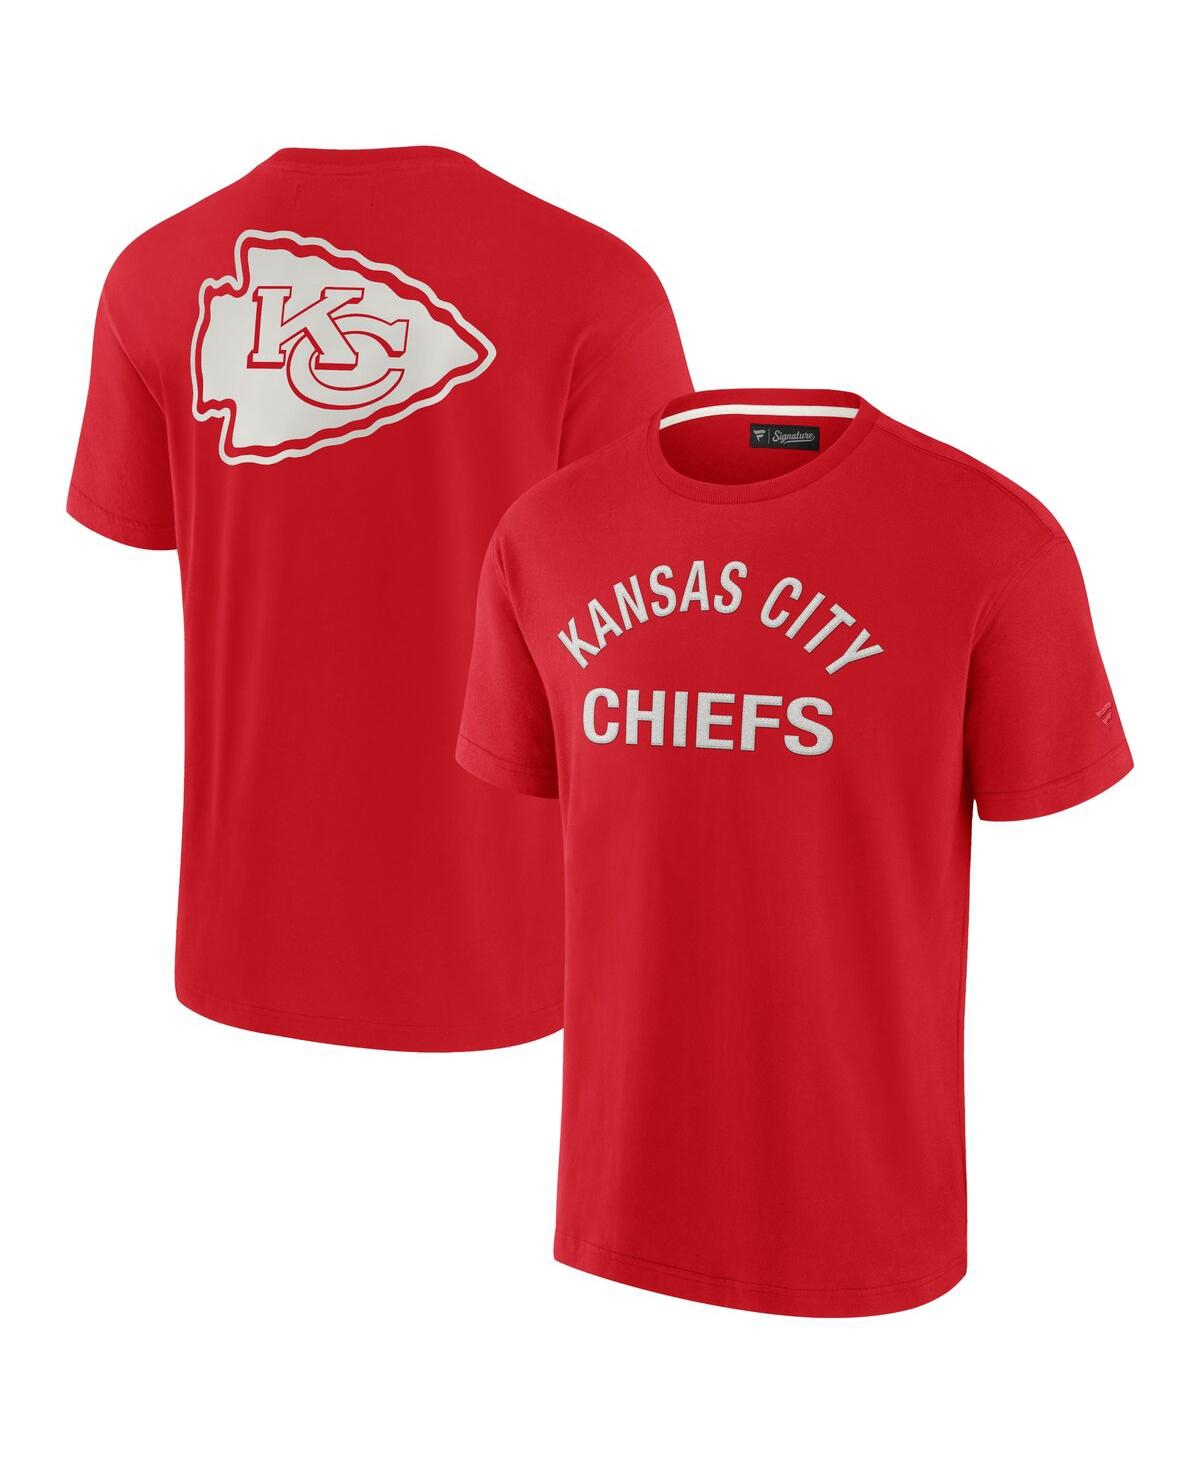 Shop Fanatics Signature Men's And Women's  Red Kansas City Chiefs Super Soft Short Sleeve T-shirt